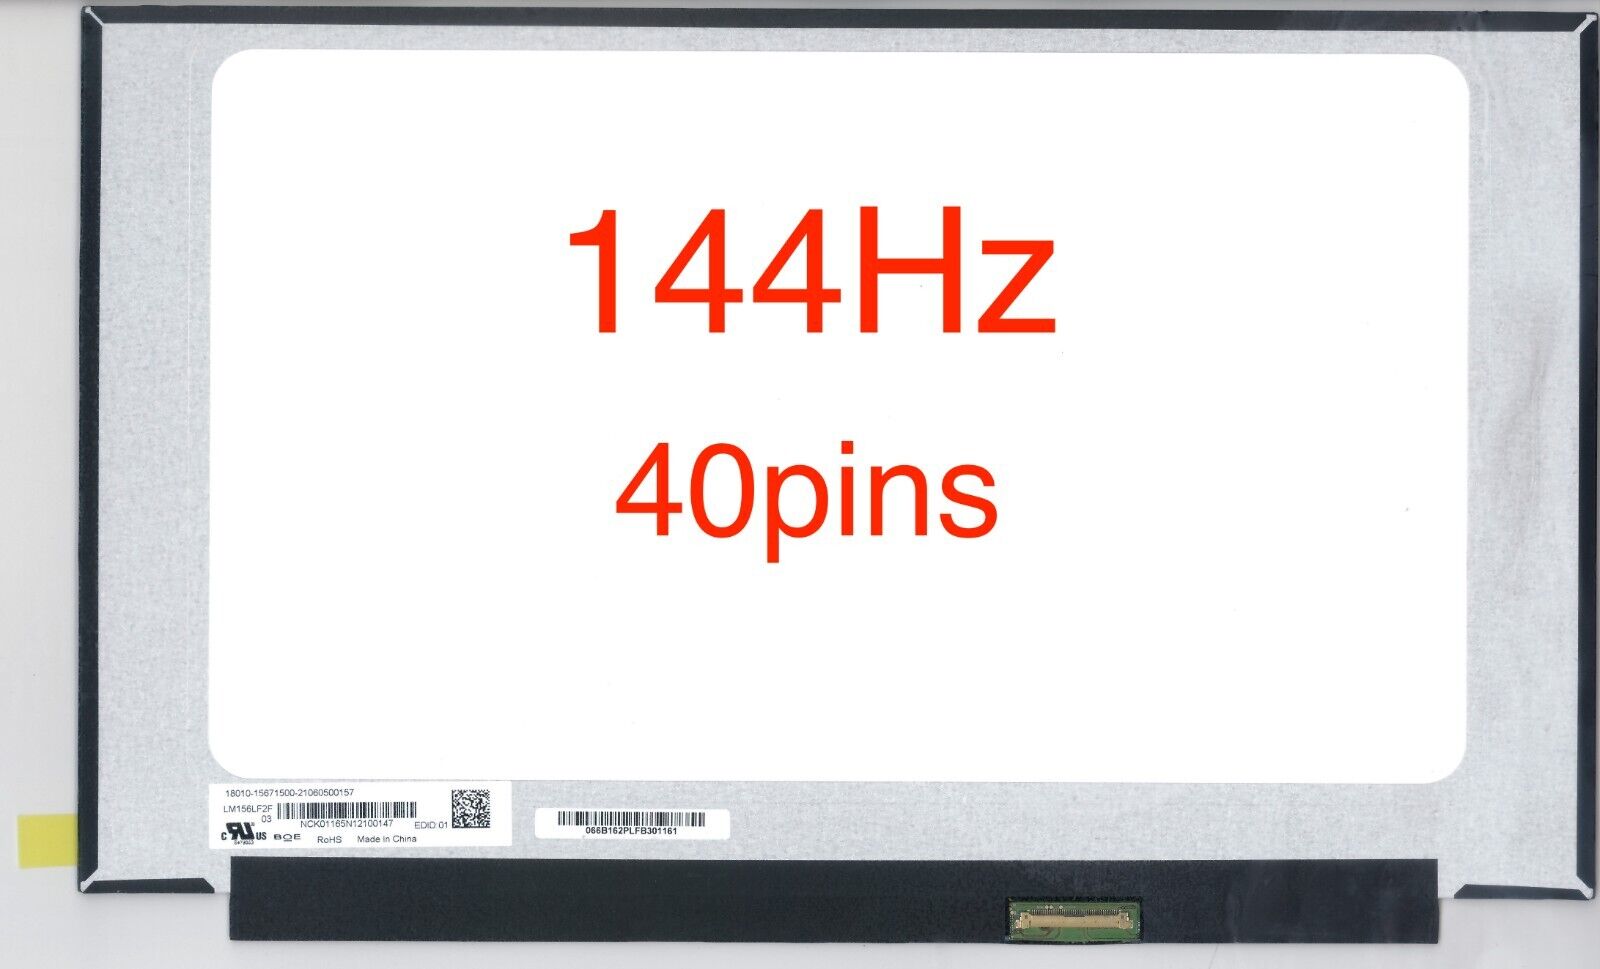 Panda LM156LF2F LM156LF2F01 LM156LF2F03 144Hz FHD 1920x1080 Matte IPS LCD Screen